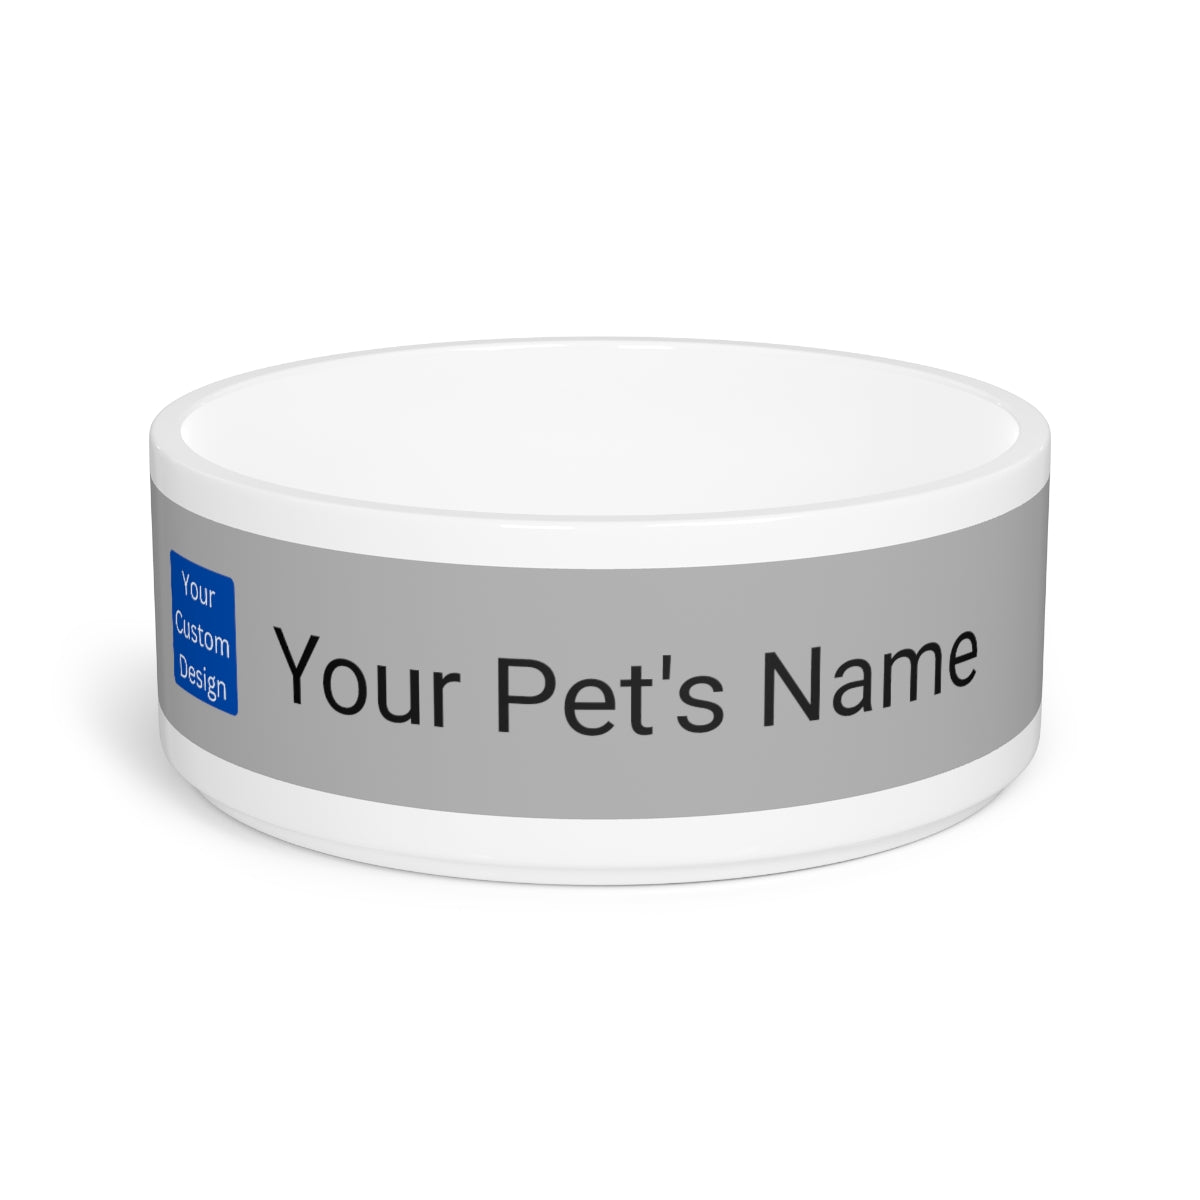 Customizable Pet Bowl